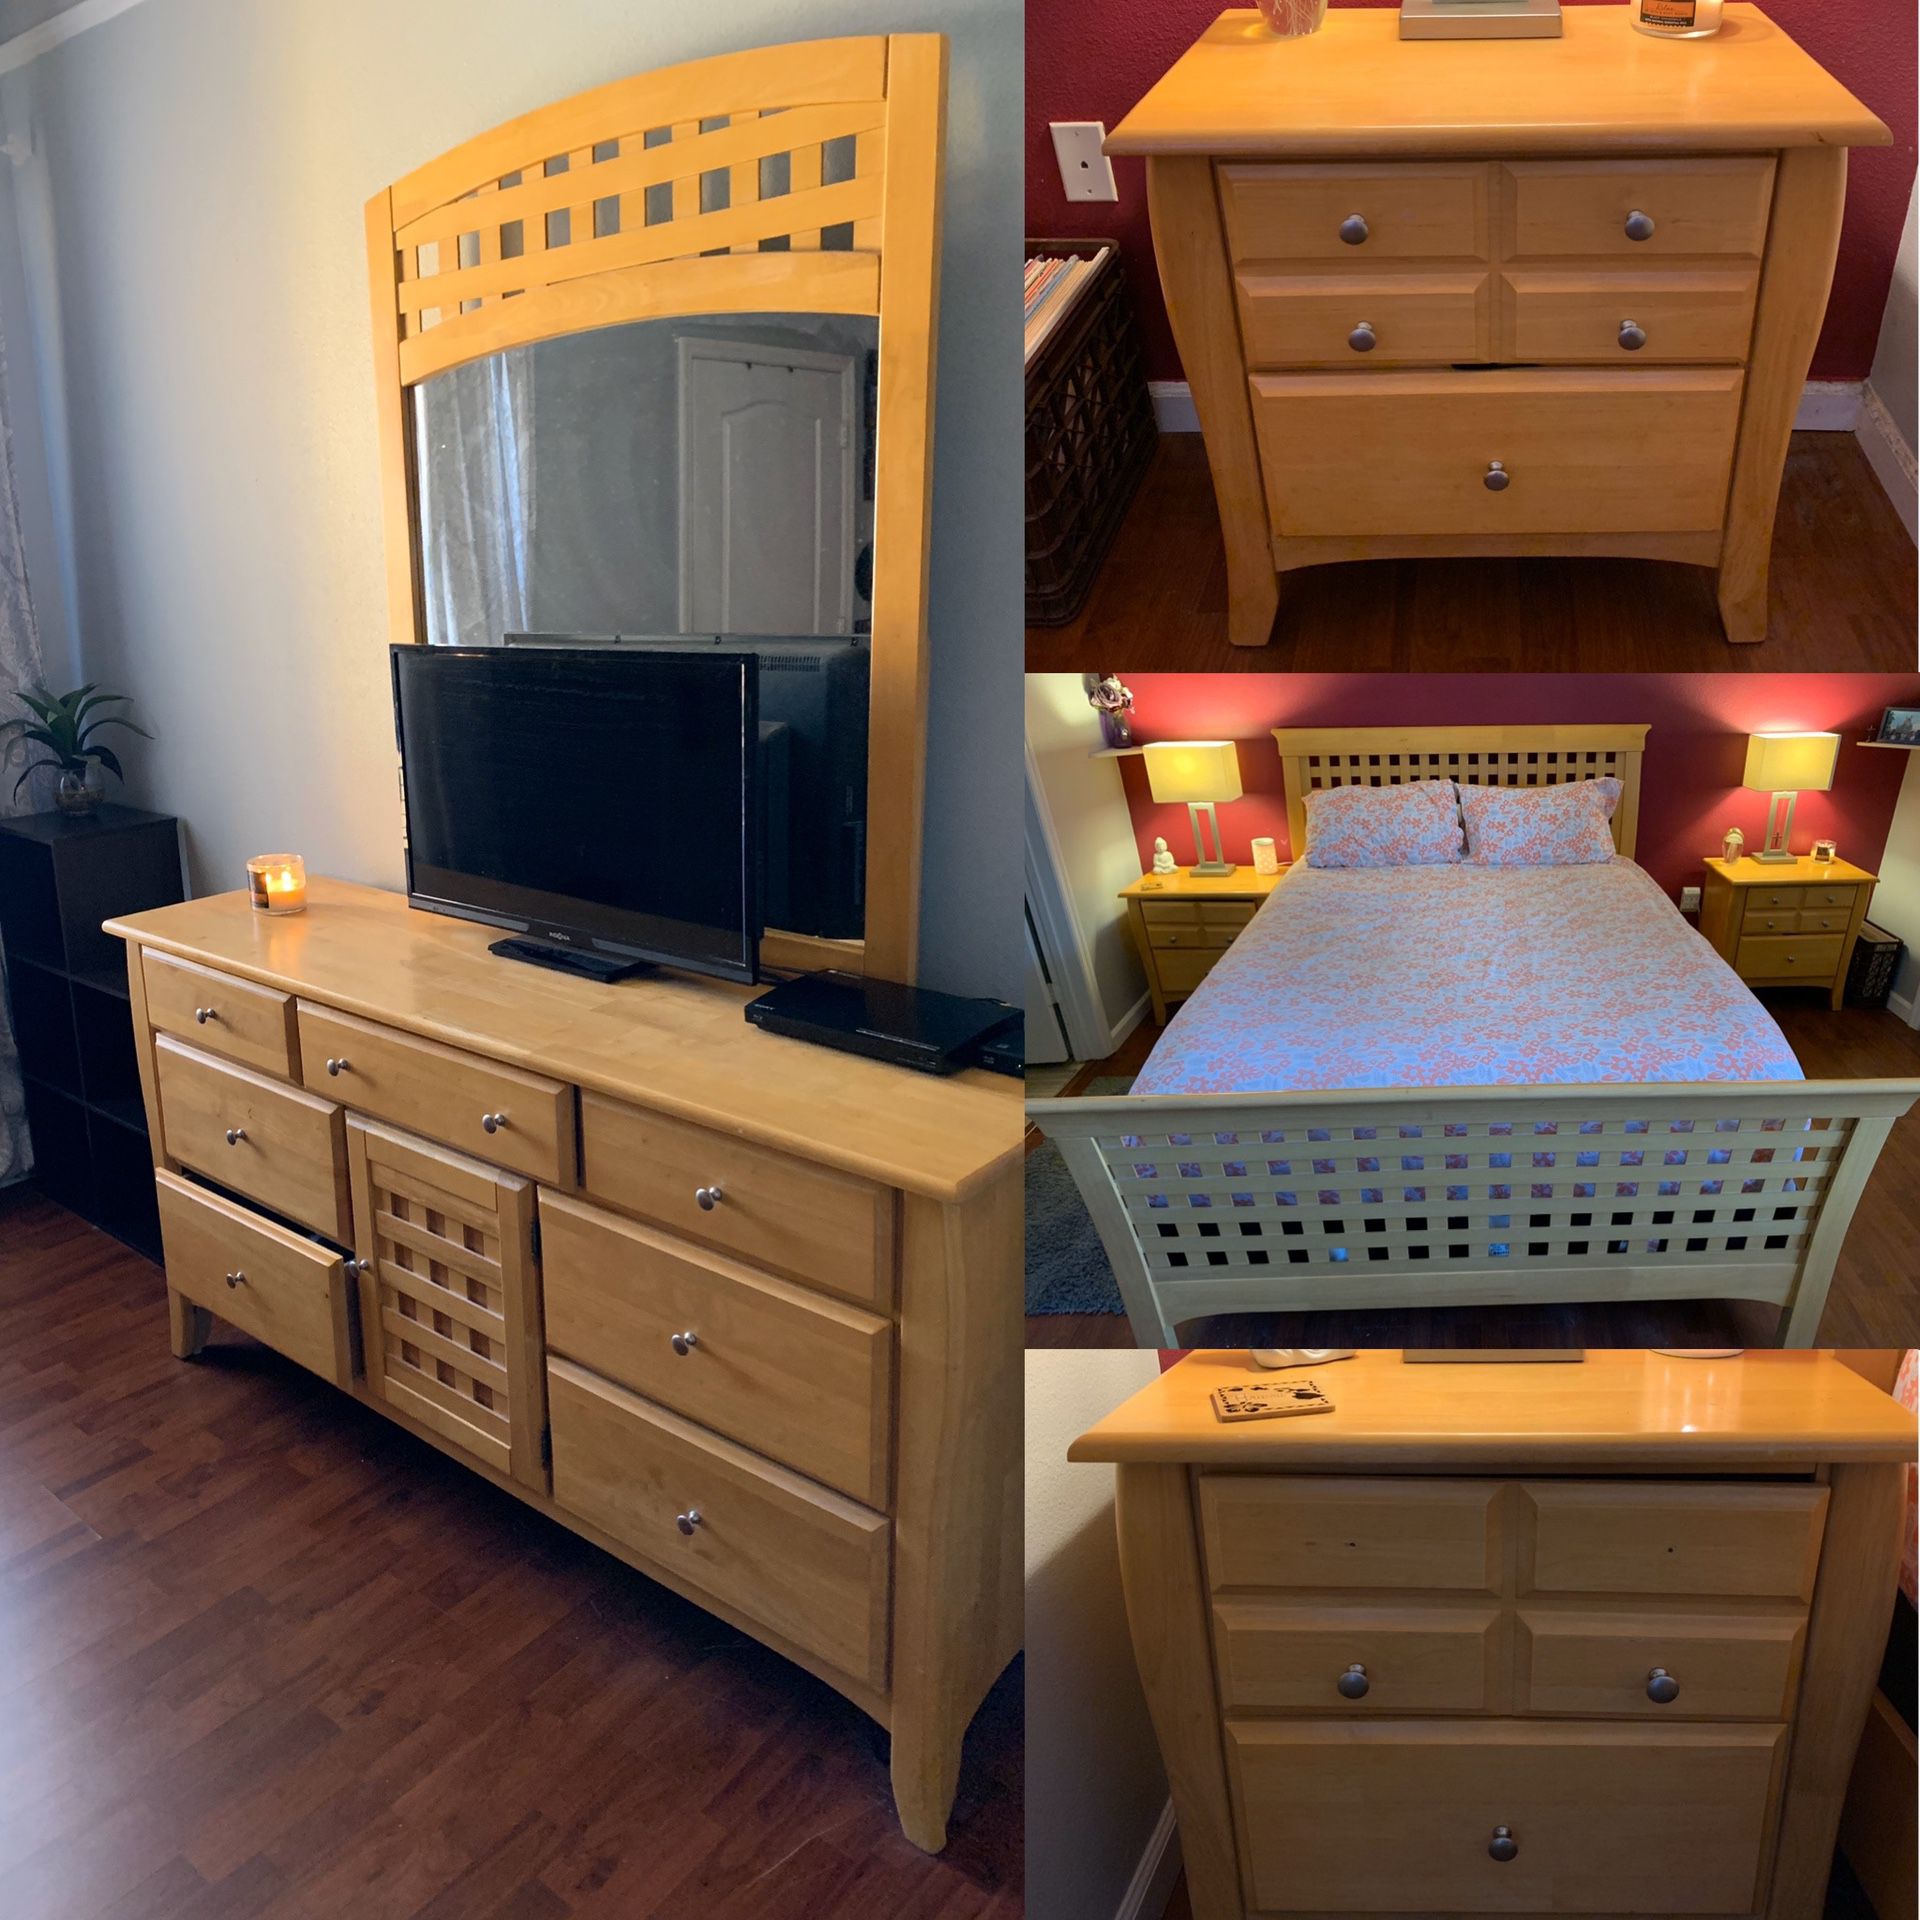 4 Piece Wooden Bed Room Set!